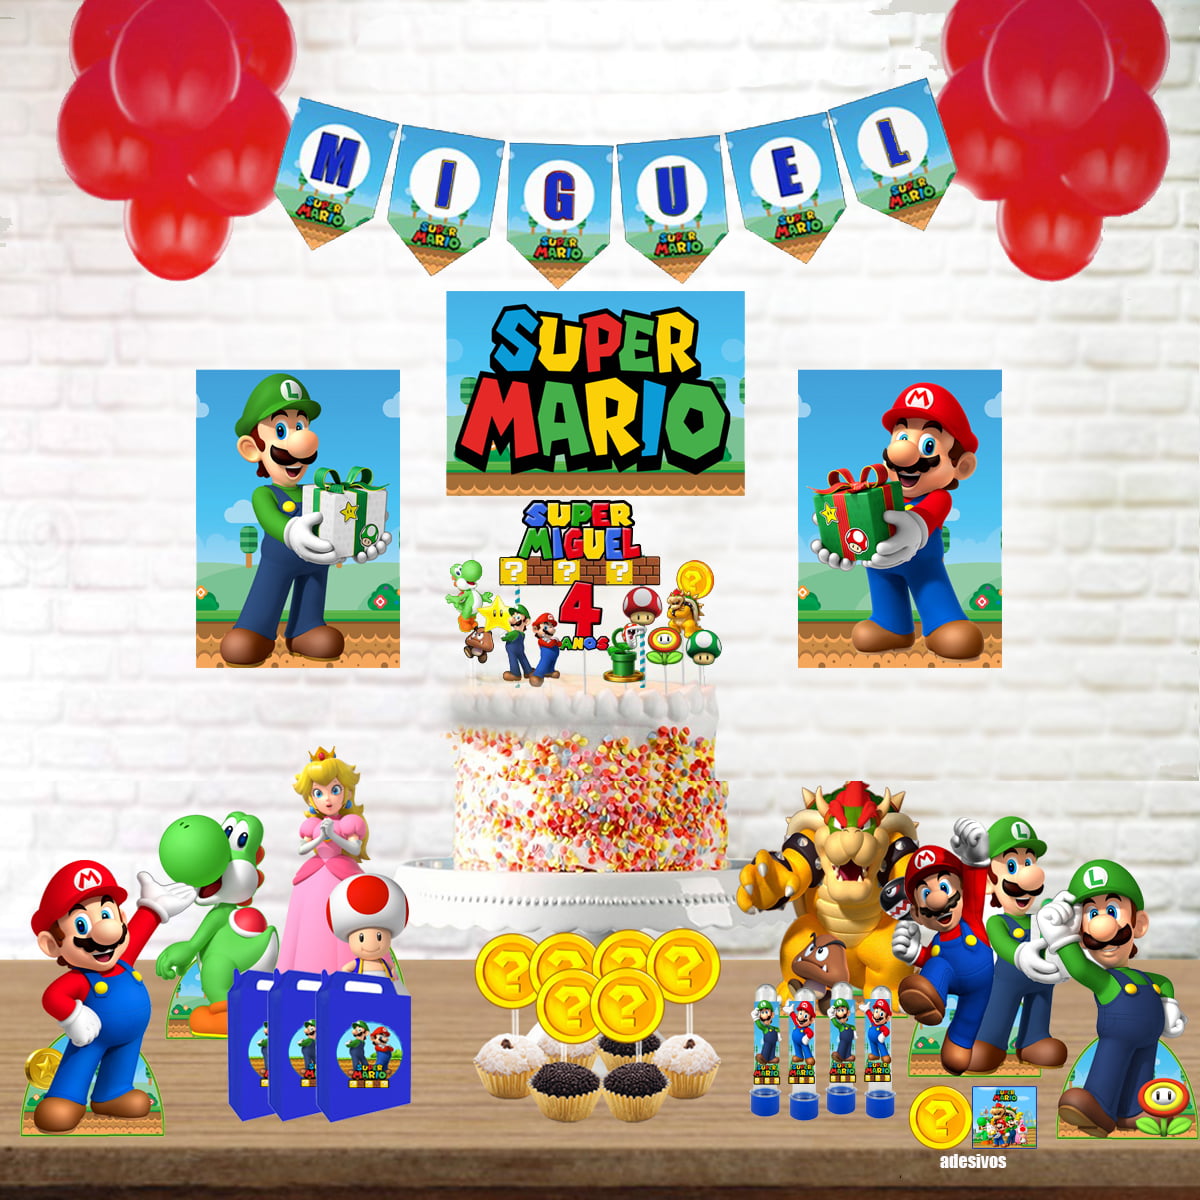 Kit Aniversário Personalizado Mario Bross